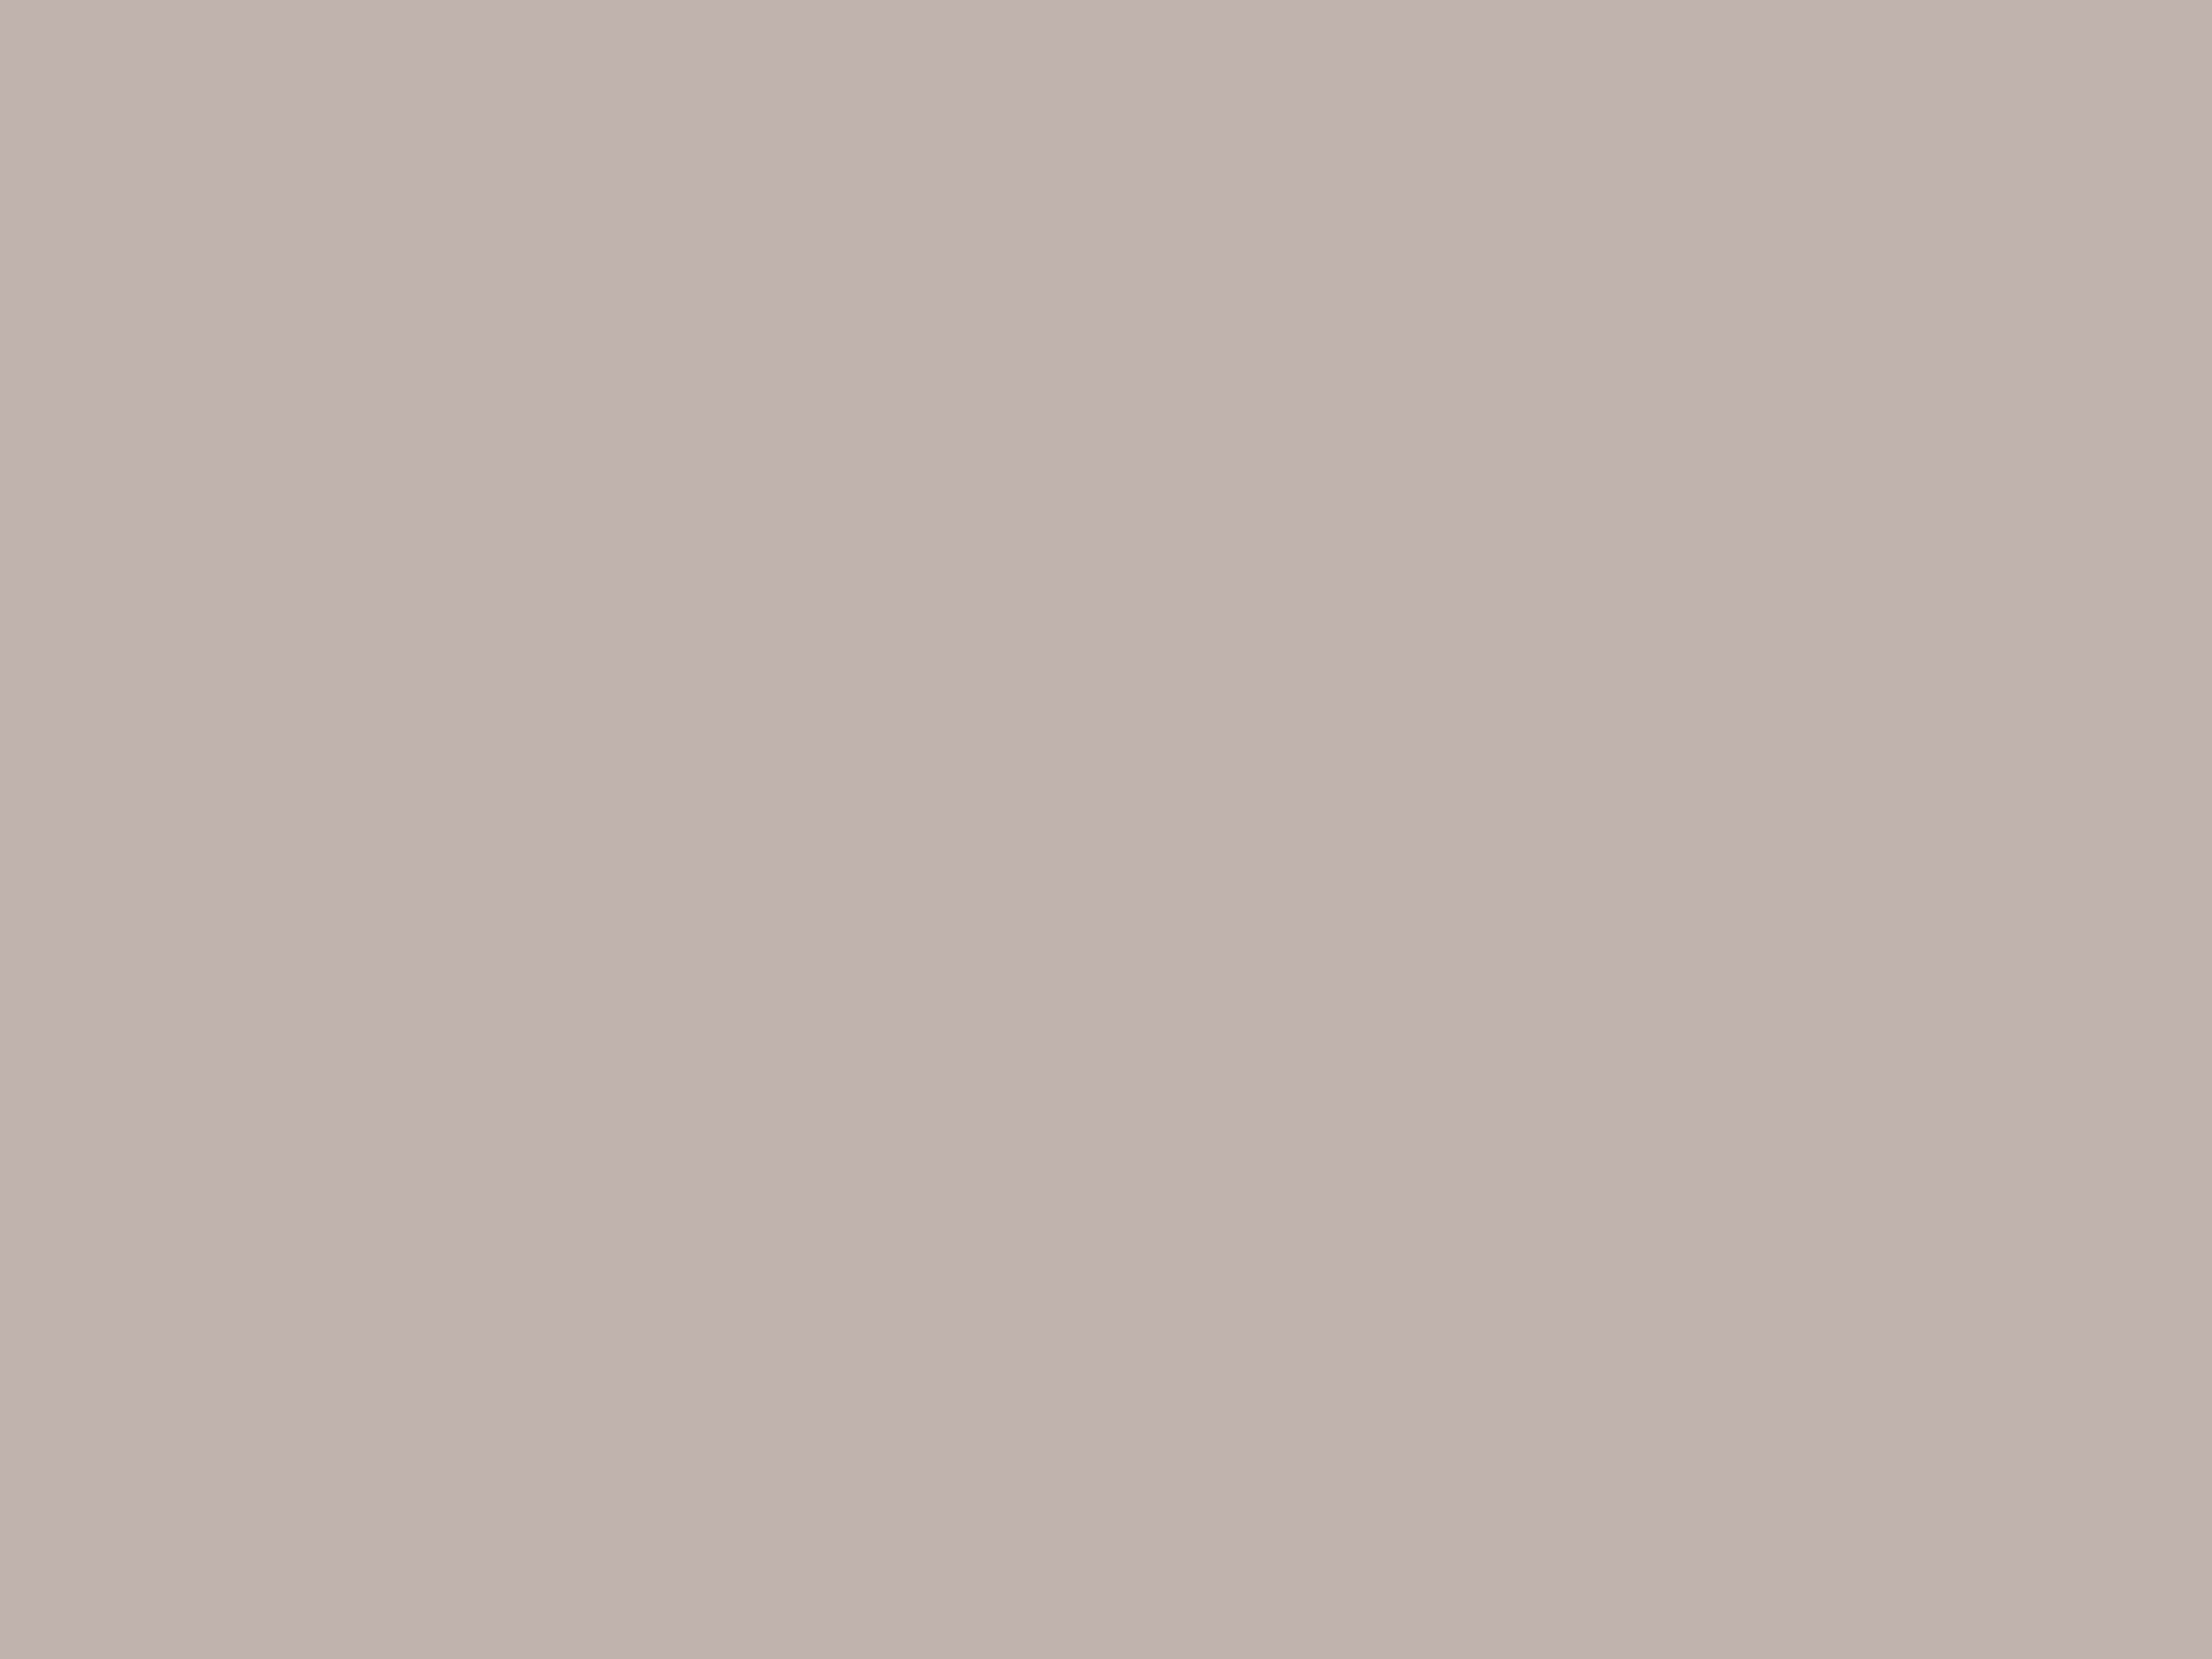 Таштыкские погребальные маски. I–V века н. э. Хакасия, Южная Сибирь. Фотография: Государственный исторический музей, Москва